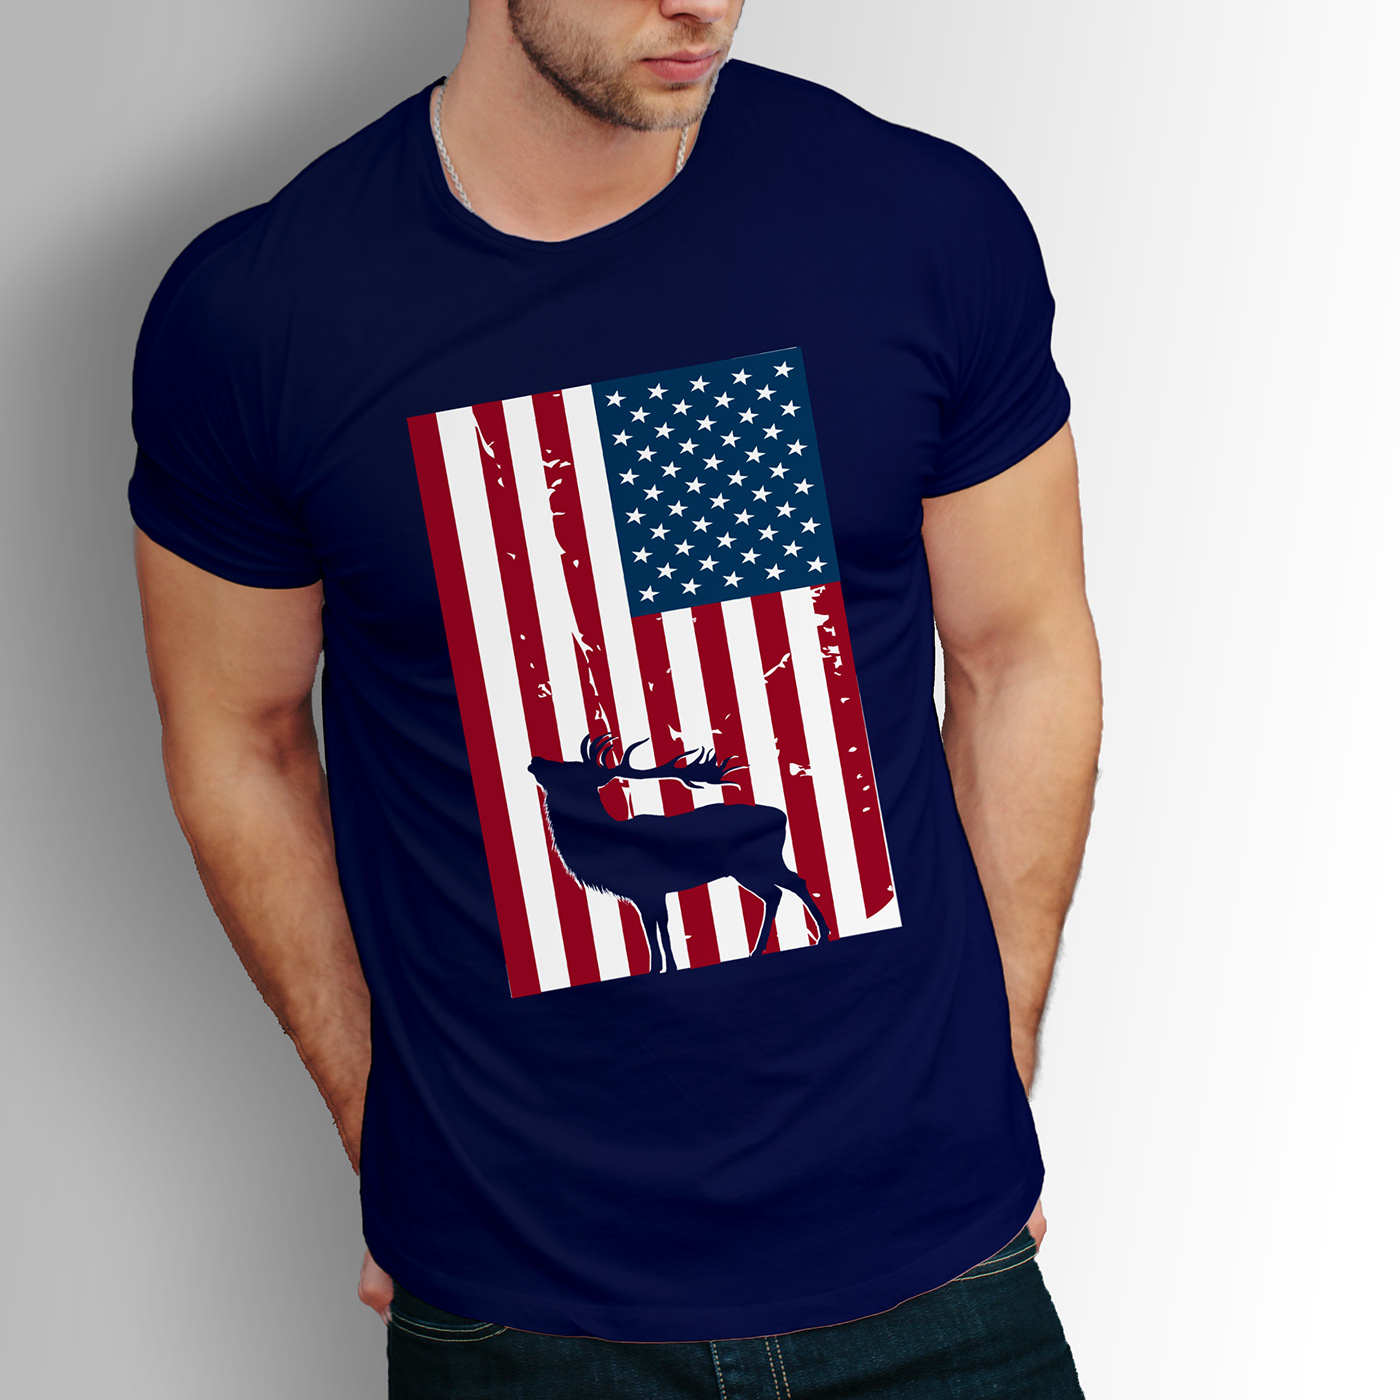 Hunting tshirt tshirts tshirtdesign graphicdesign fishing t shirt New T shirt t-shirt custom t shirt Free T-shirt Mockup